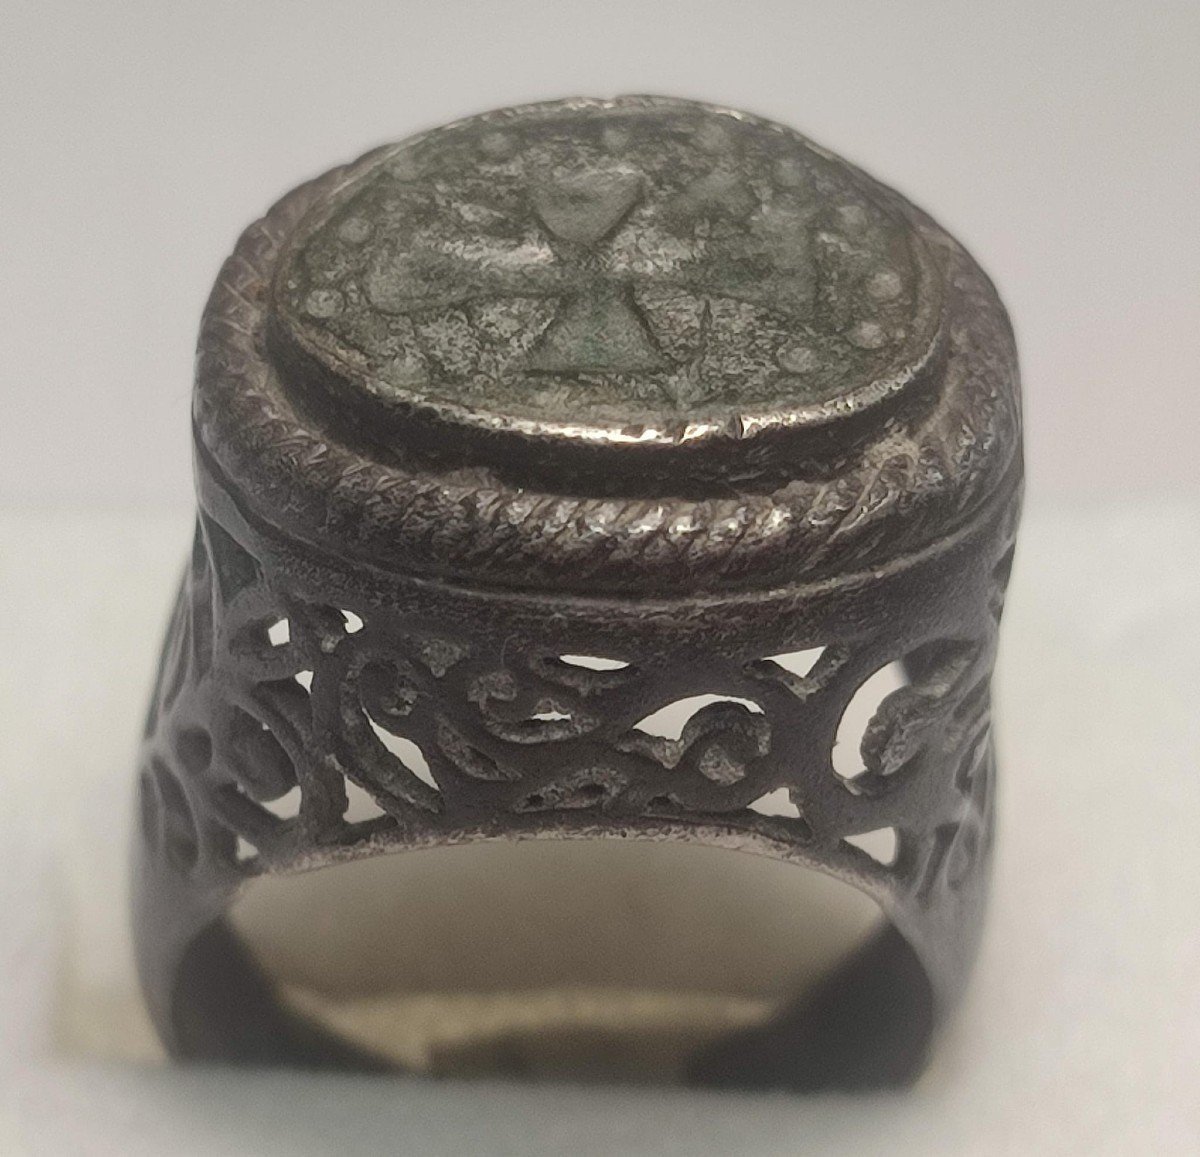 Superbo anello-sigillo Templare in argento, con gambo traforato e croce circondata da piccoli globi.